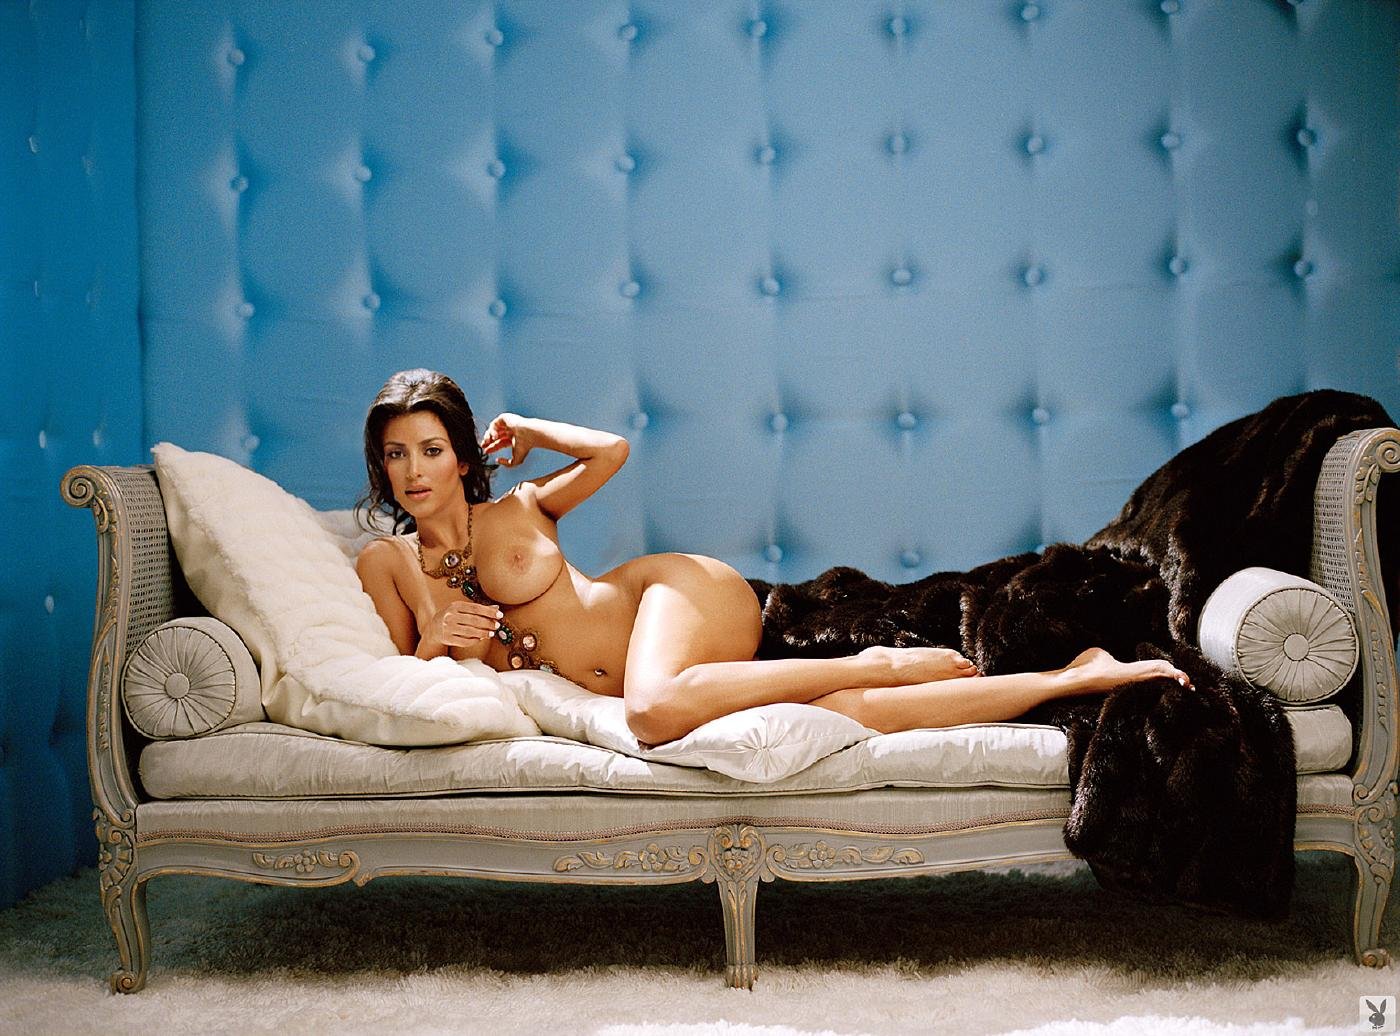 Kim Kardashian Nude Playboy Playmodels Photoshoot Leaked image